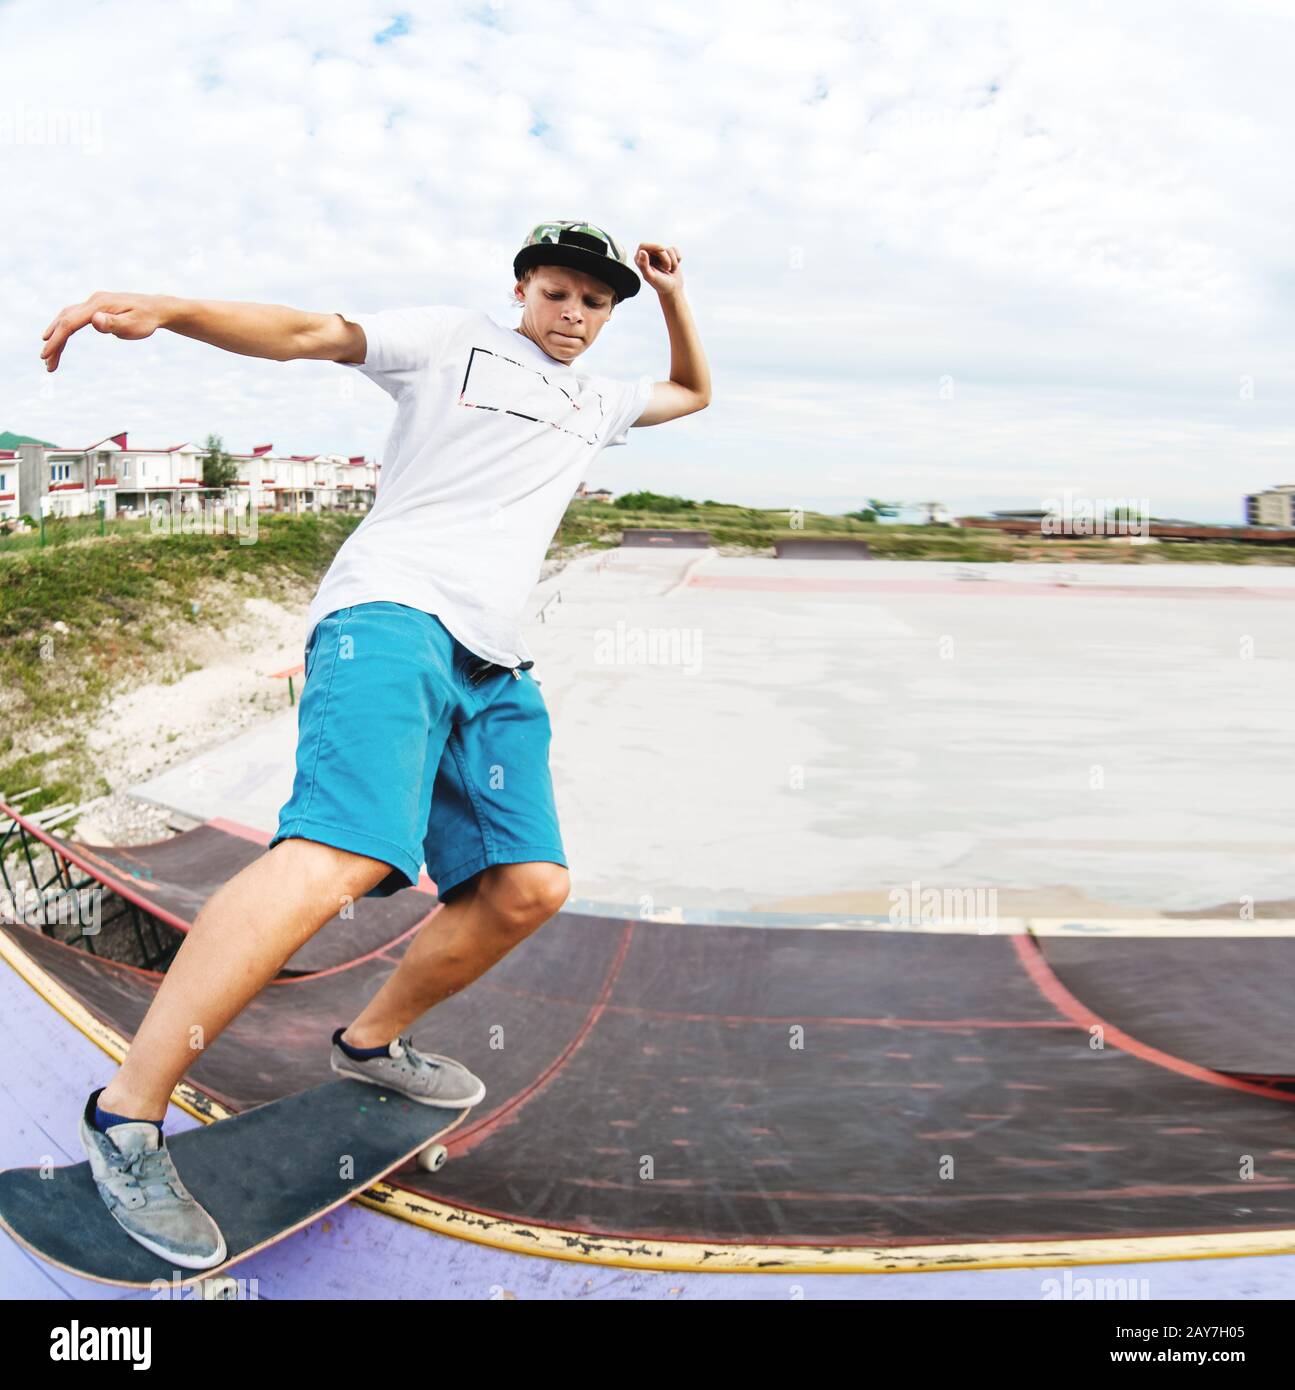 Teenager Skater hängen über eine Rampe auf einem Skateboard in einem Skatepark Stockfoto